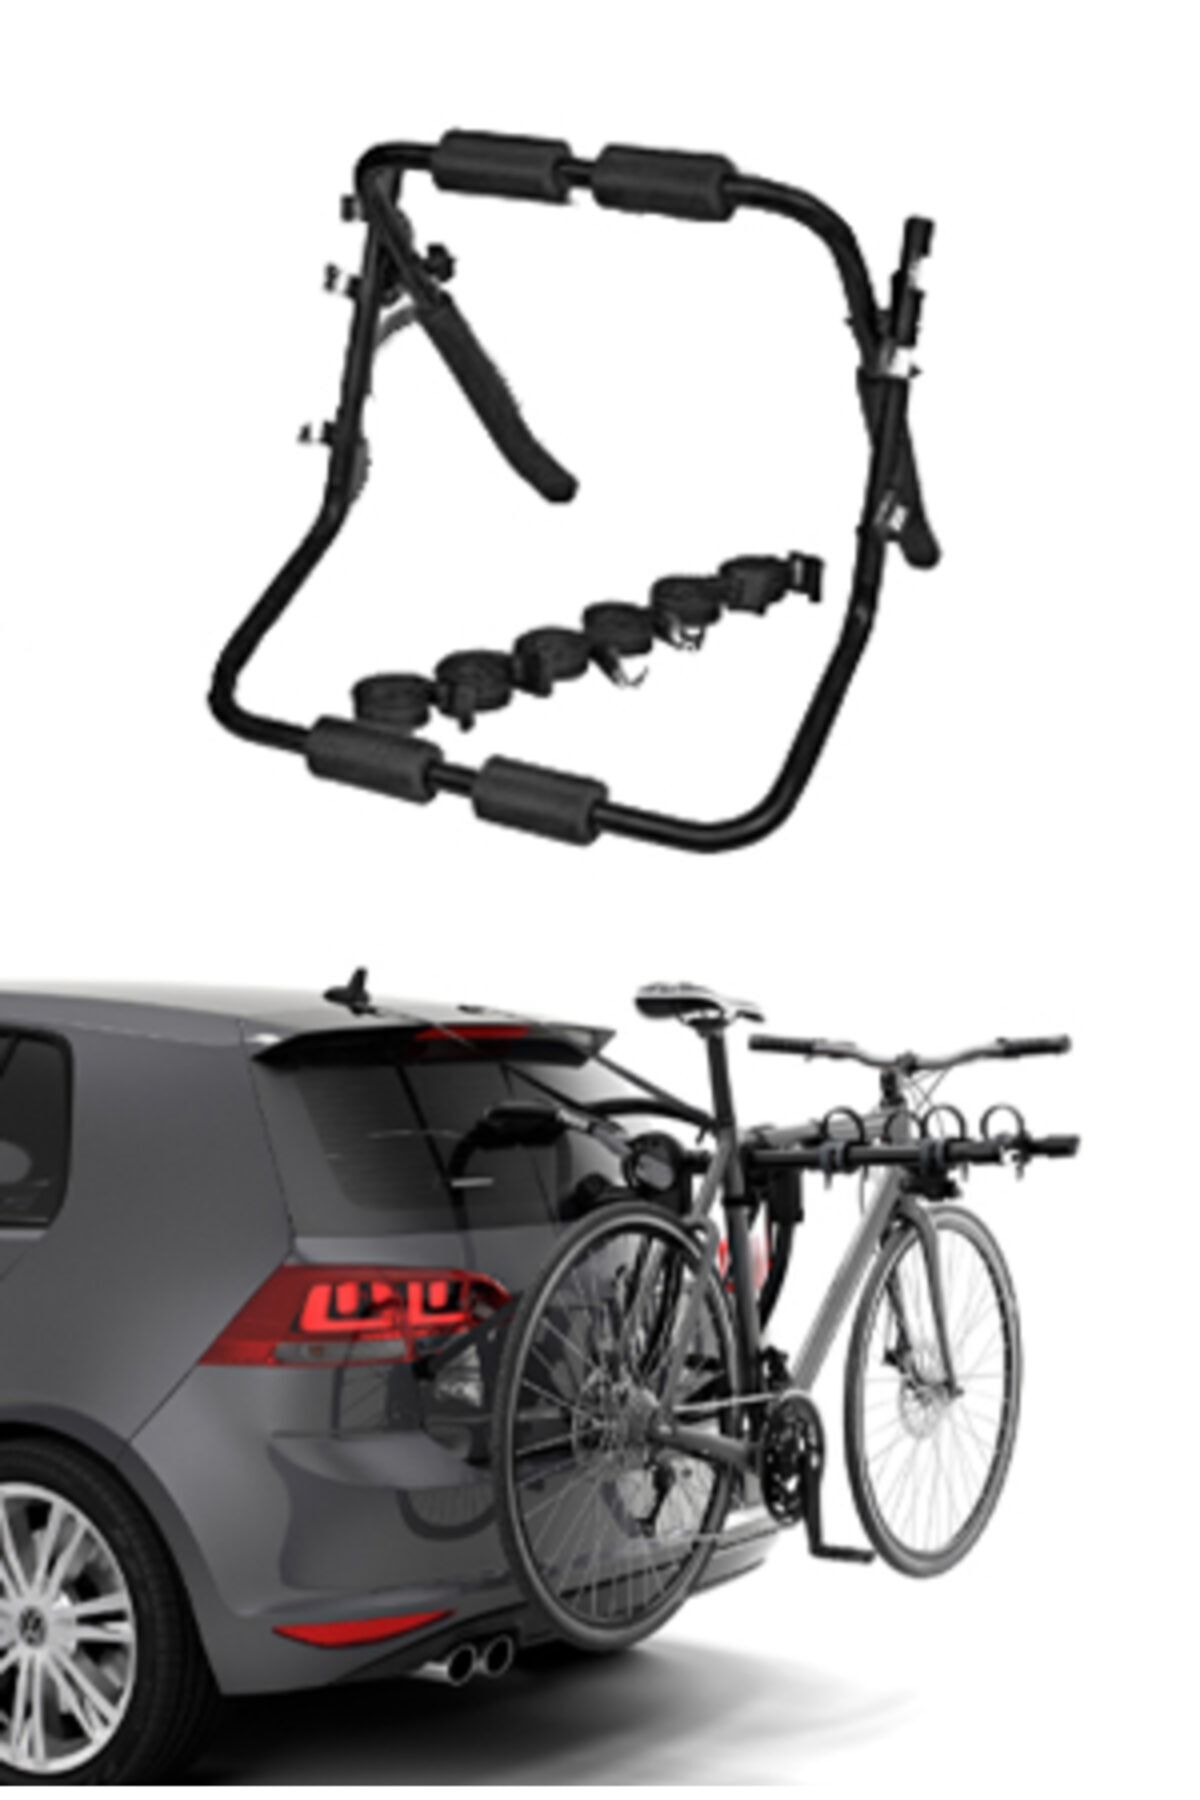 Leader Bisiklet Taşıyıcı Bisiklet Taşıma Aparatı (2 Bisiklet Kapasiteli)